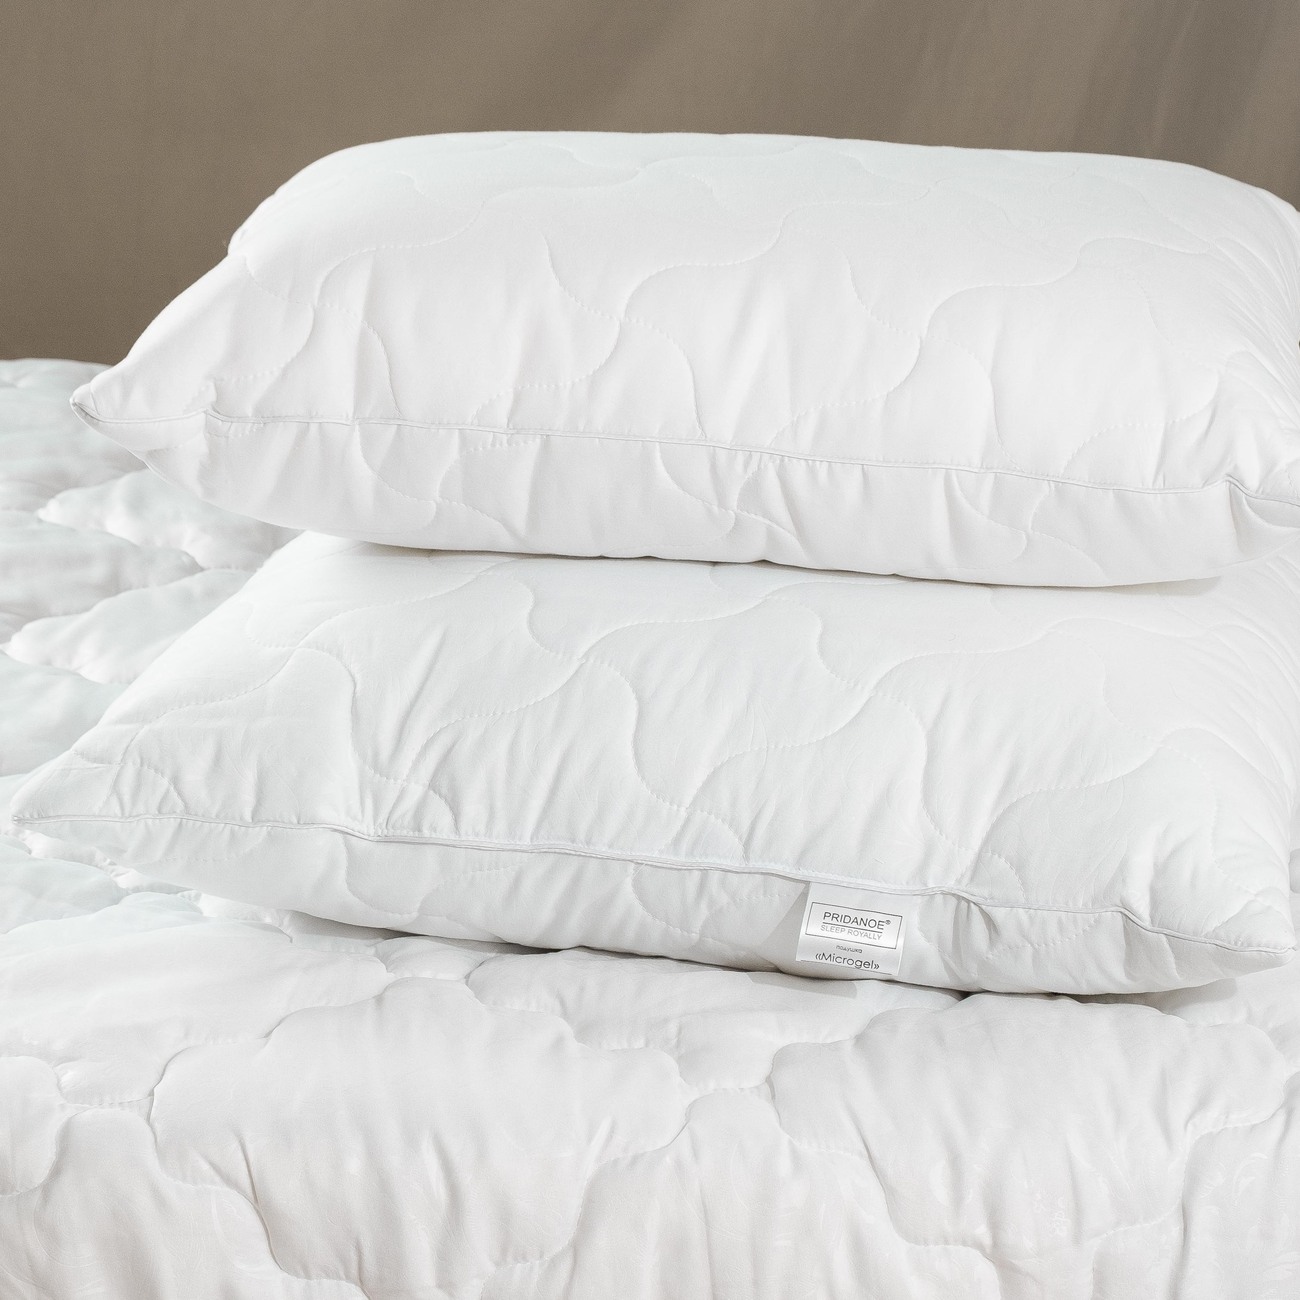 Подушка микрогель купить. Микрогель в подушках что это. Подушки из микрогеля. Микрогель наполнитель одеяла. Mikrojel волокно для подушек и одеял.